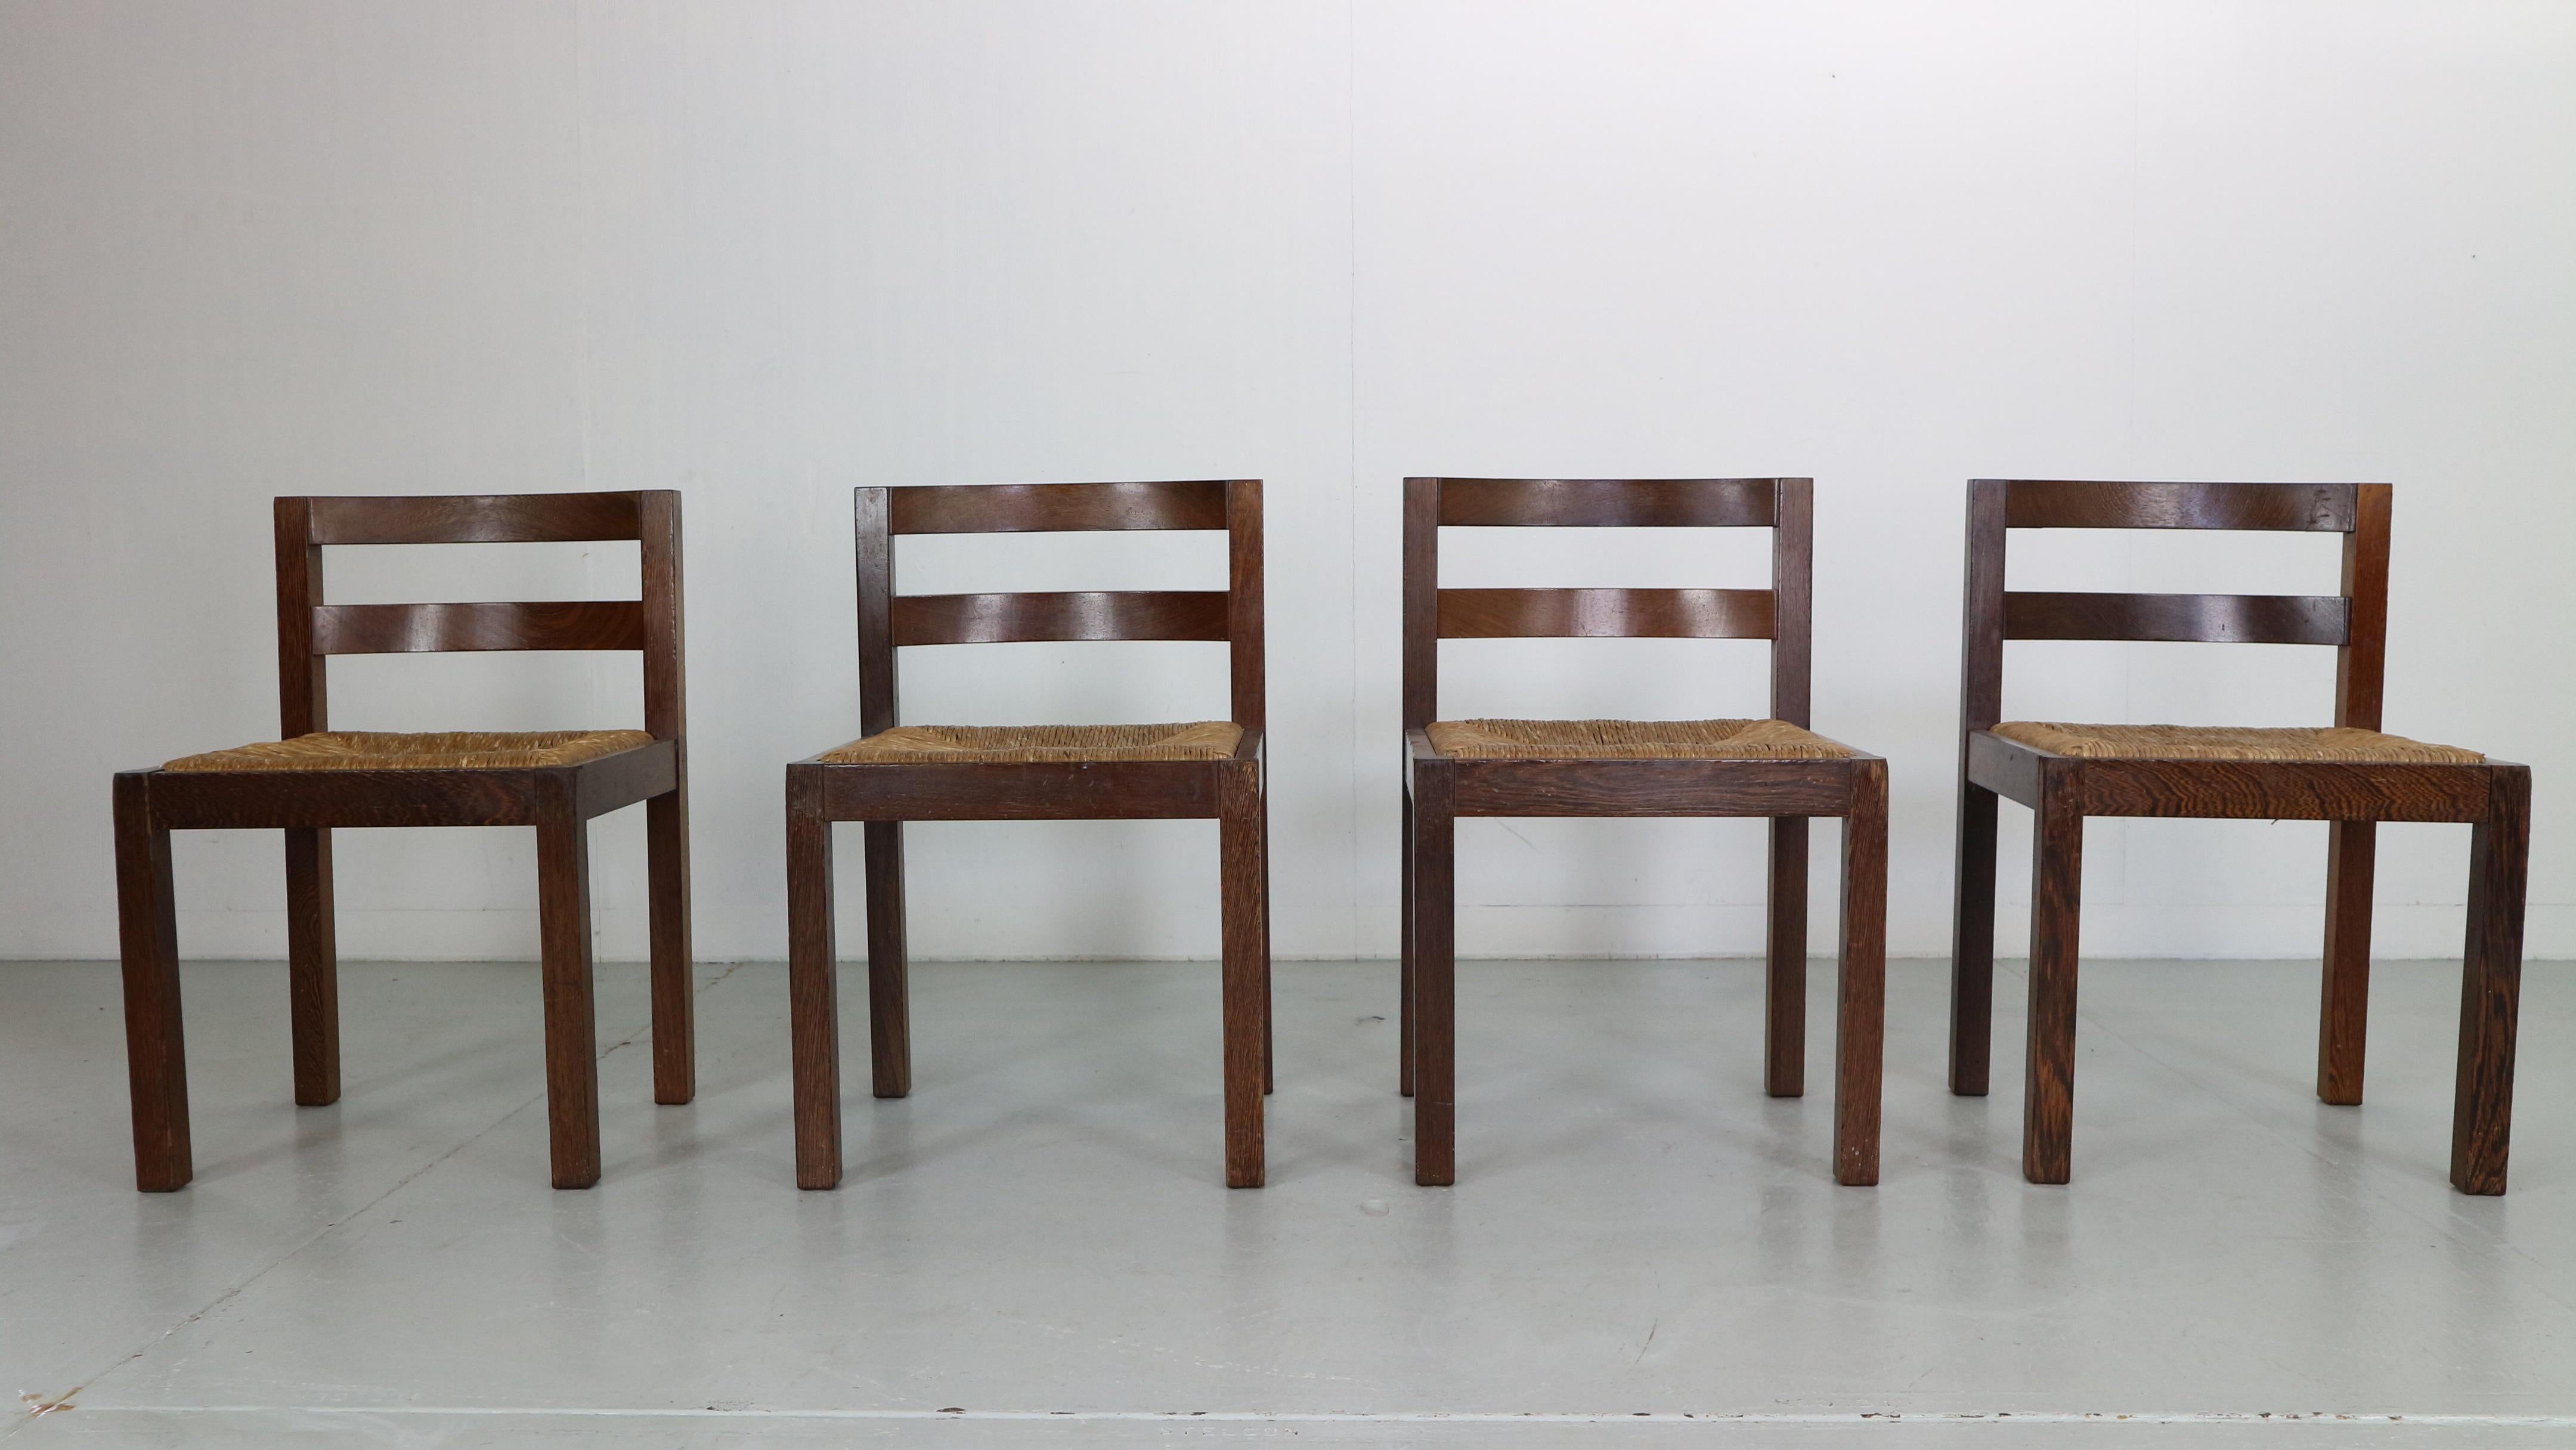 Der sehr berühmte niederländische Möbeldesigner Martin Visser entwarf diese Stühle für t' Spectrum in den 1960er Jahren in den Niederlanden.

Der Satz von 4 Stühlen ist in einem tollen Originalzustand.
Hergestellt aus Rattan-Sitzfläche und massivem